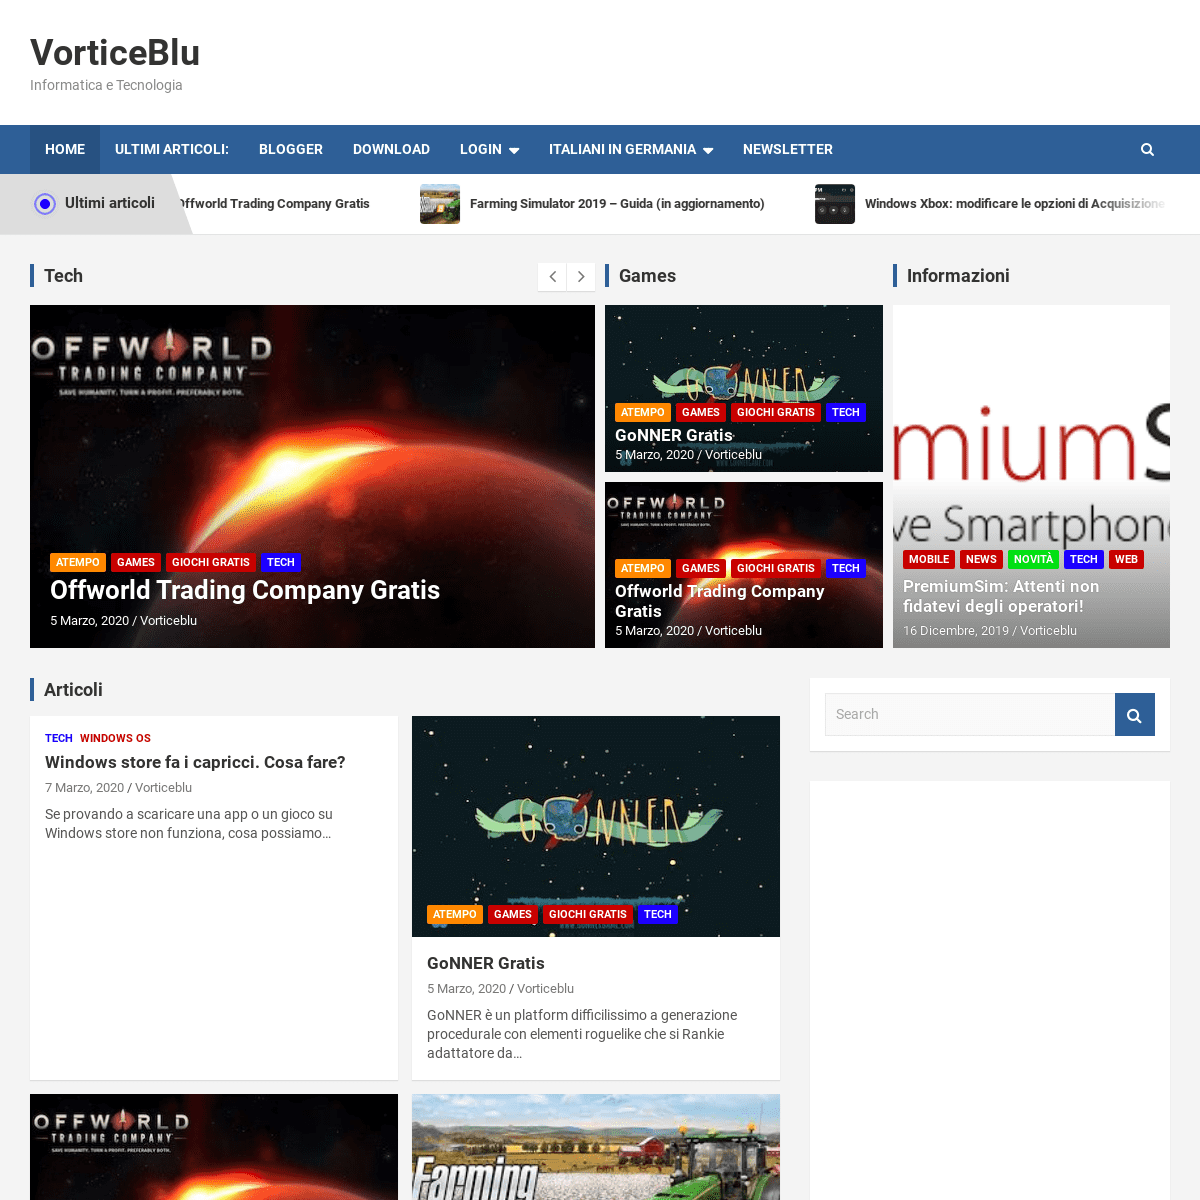 A complete backup of vorticeblu.com